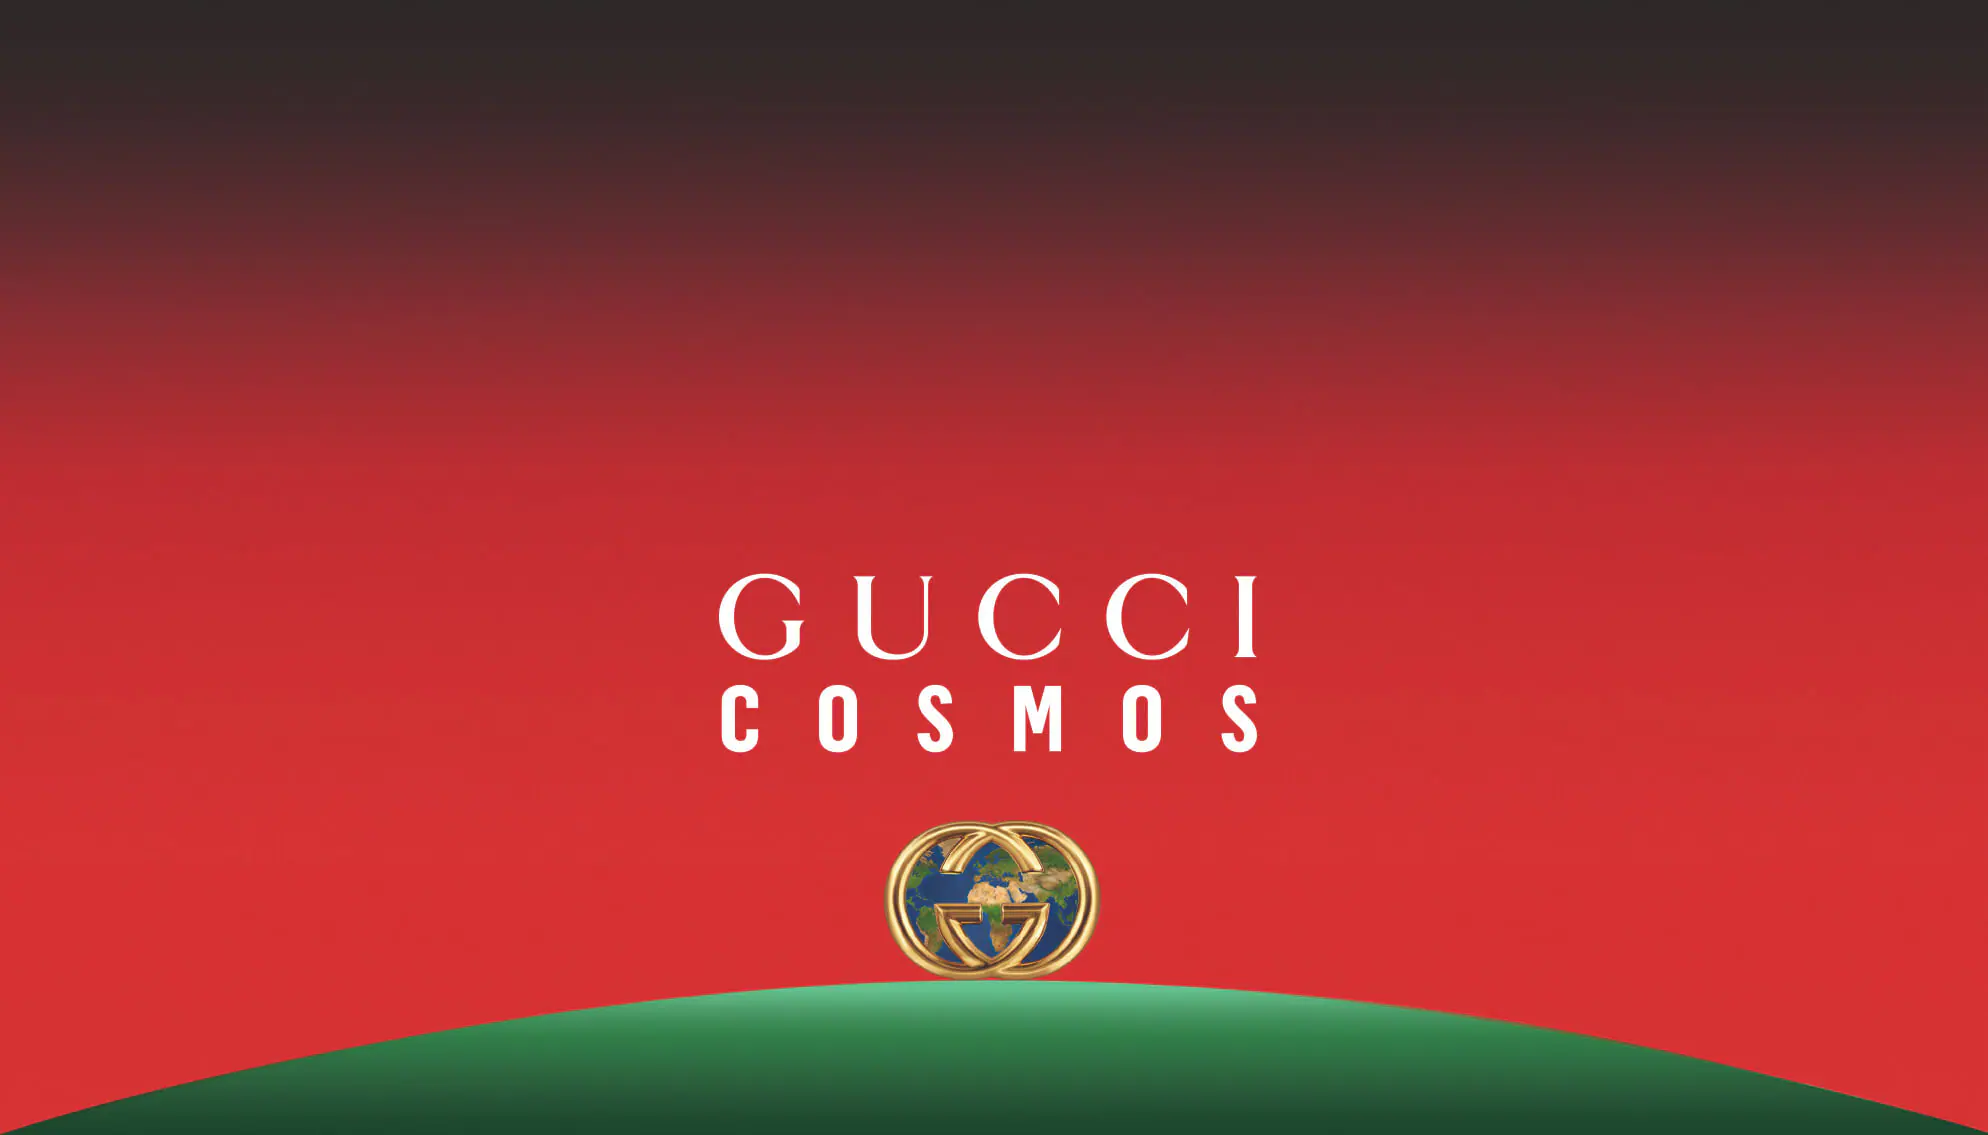 Gucci Cosmos giới thiệu di sản thương hiệu với công nghệ đột phá